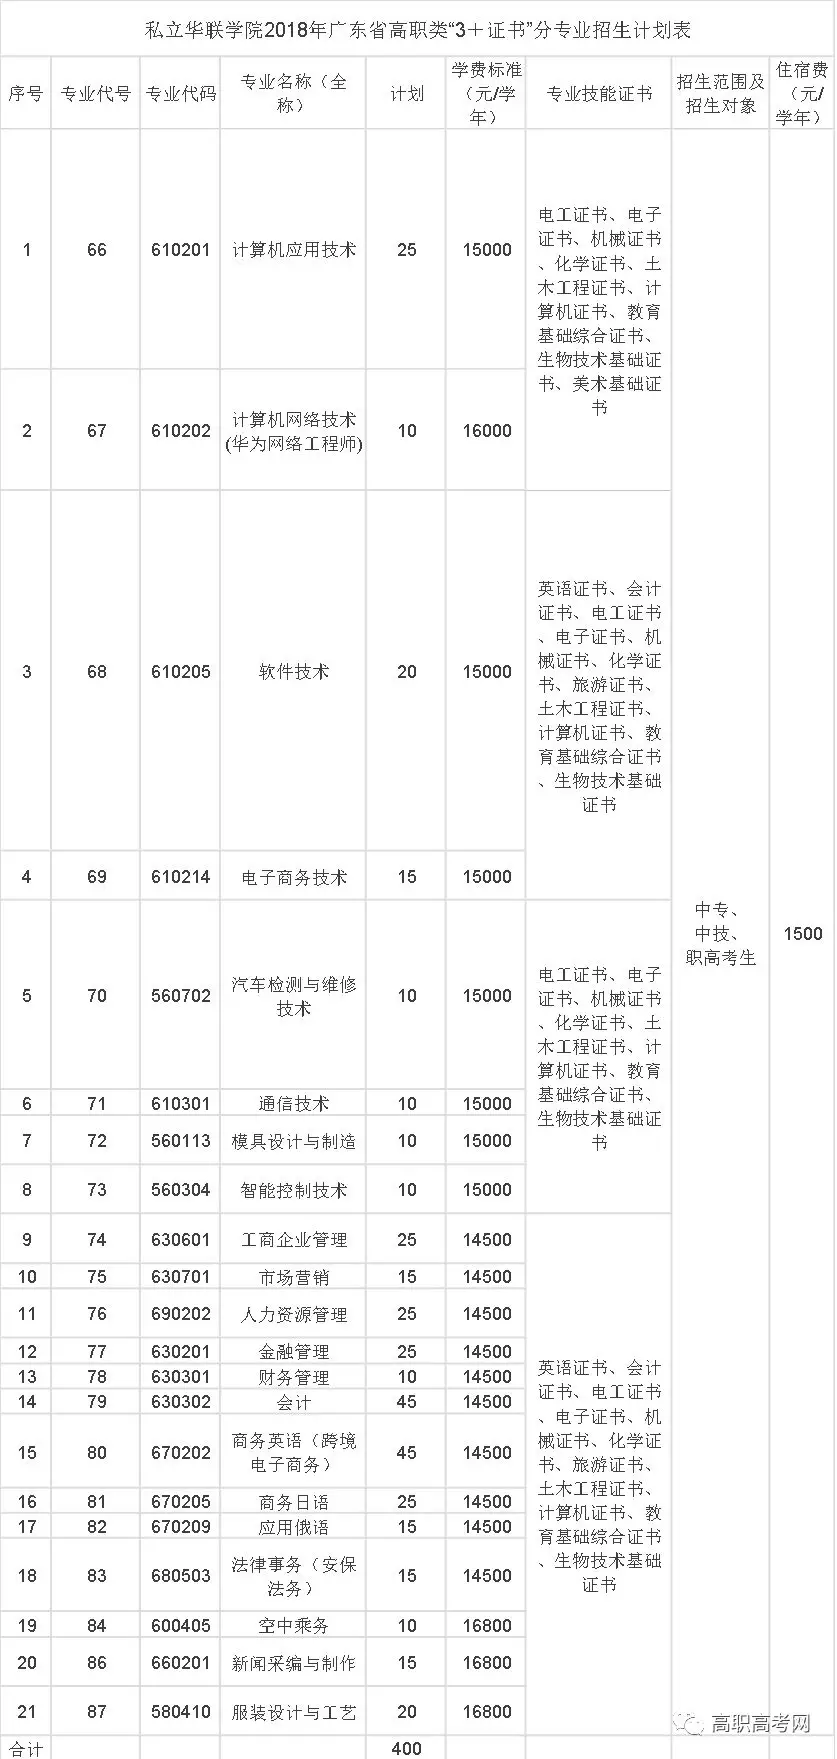 私立华联学院2018年广东省高职类“3＋证书”分专业招生计划表